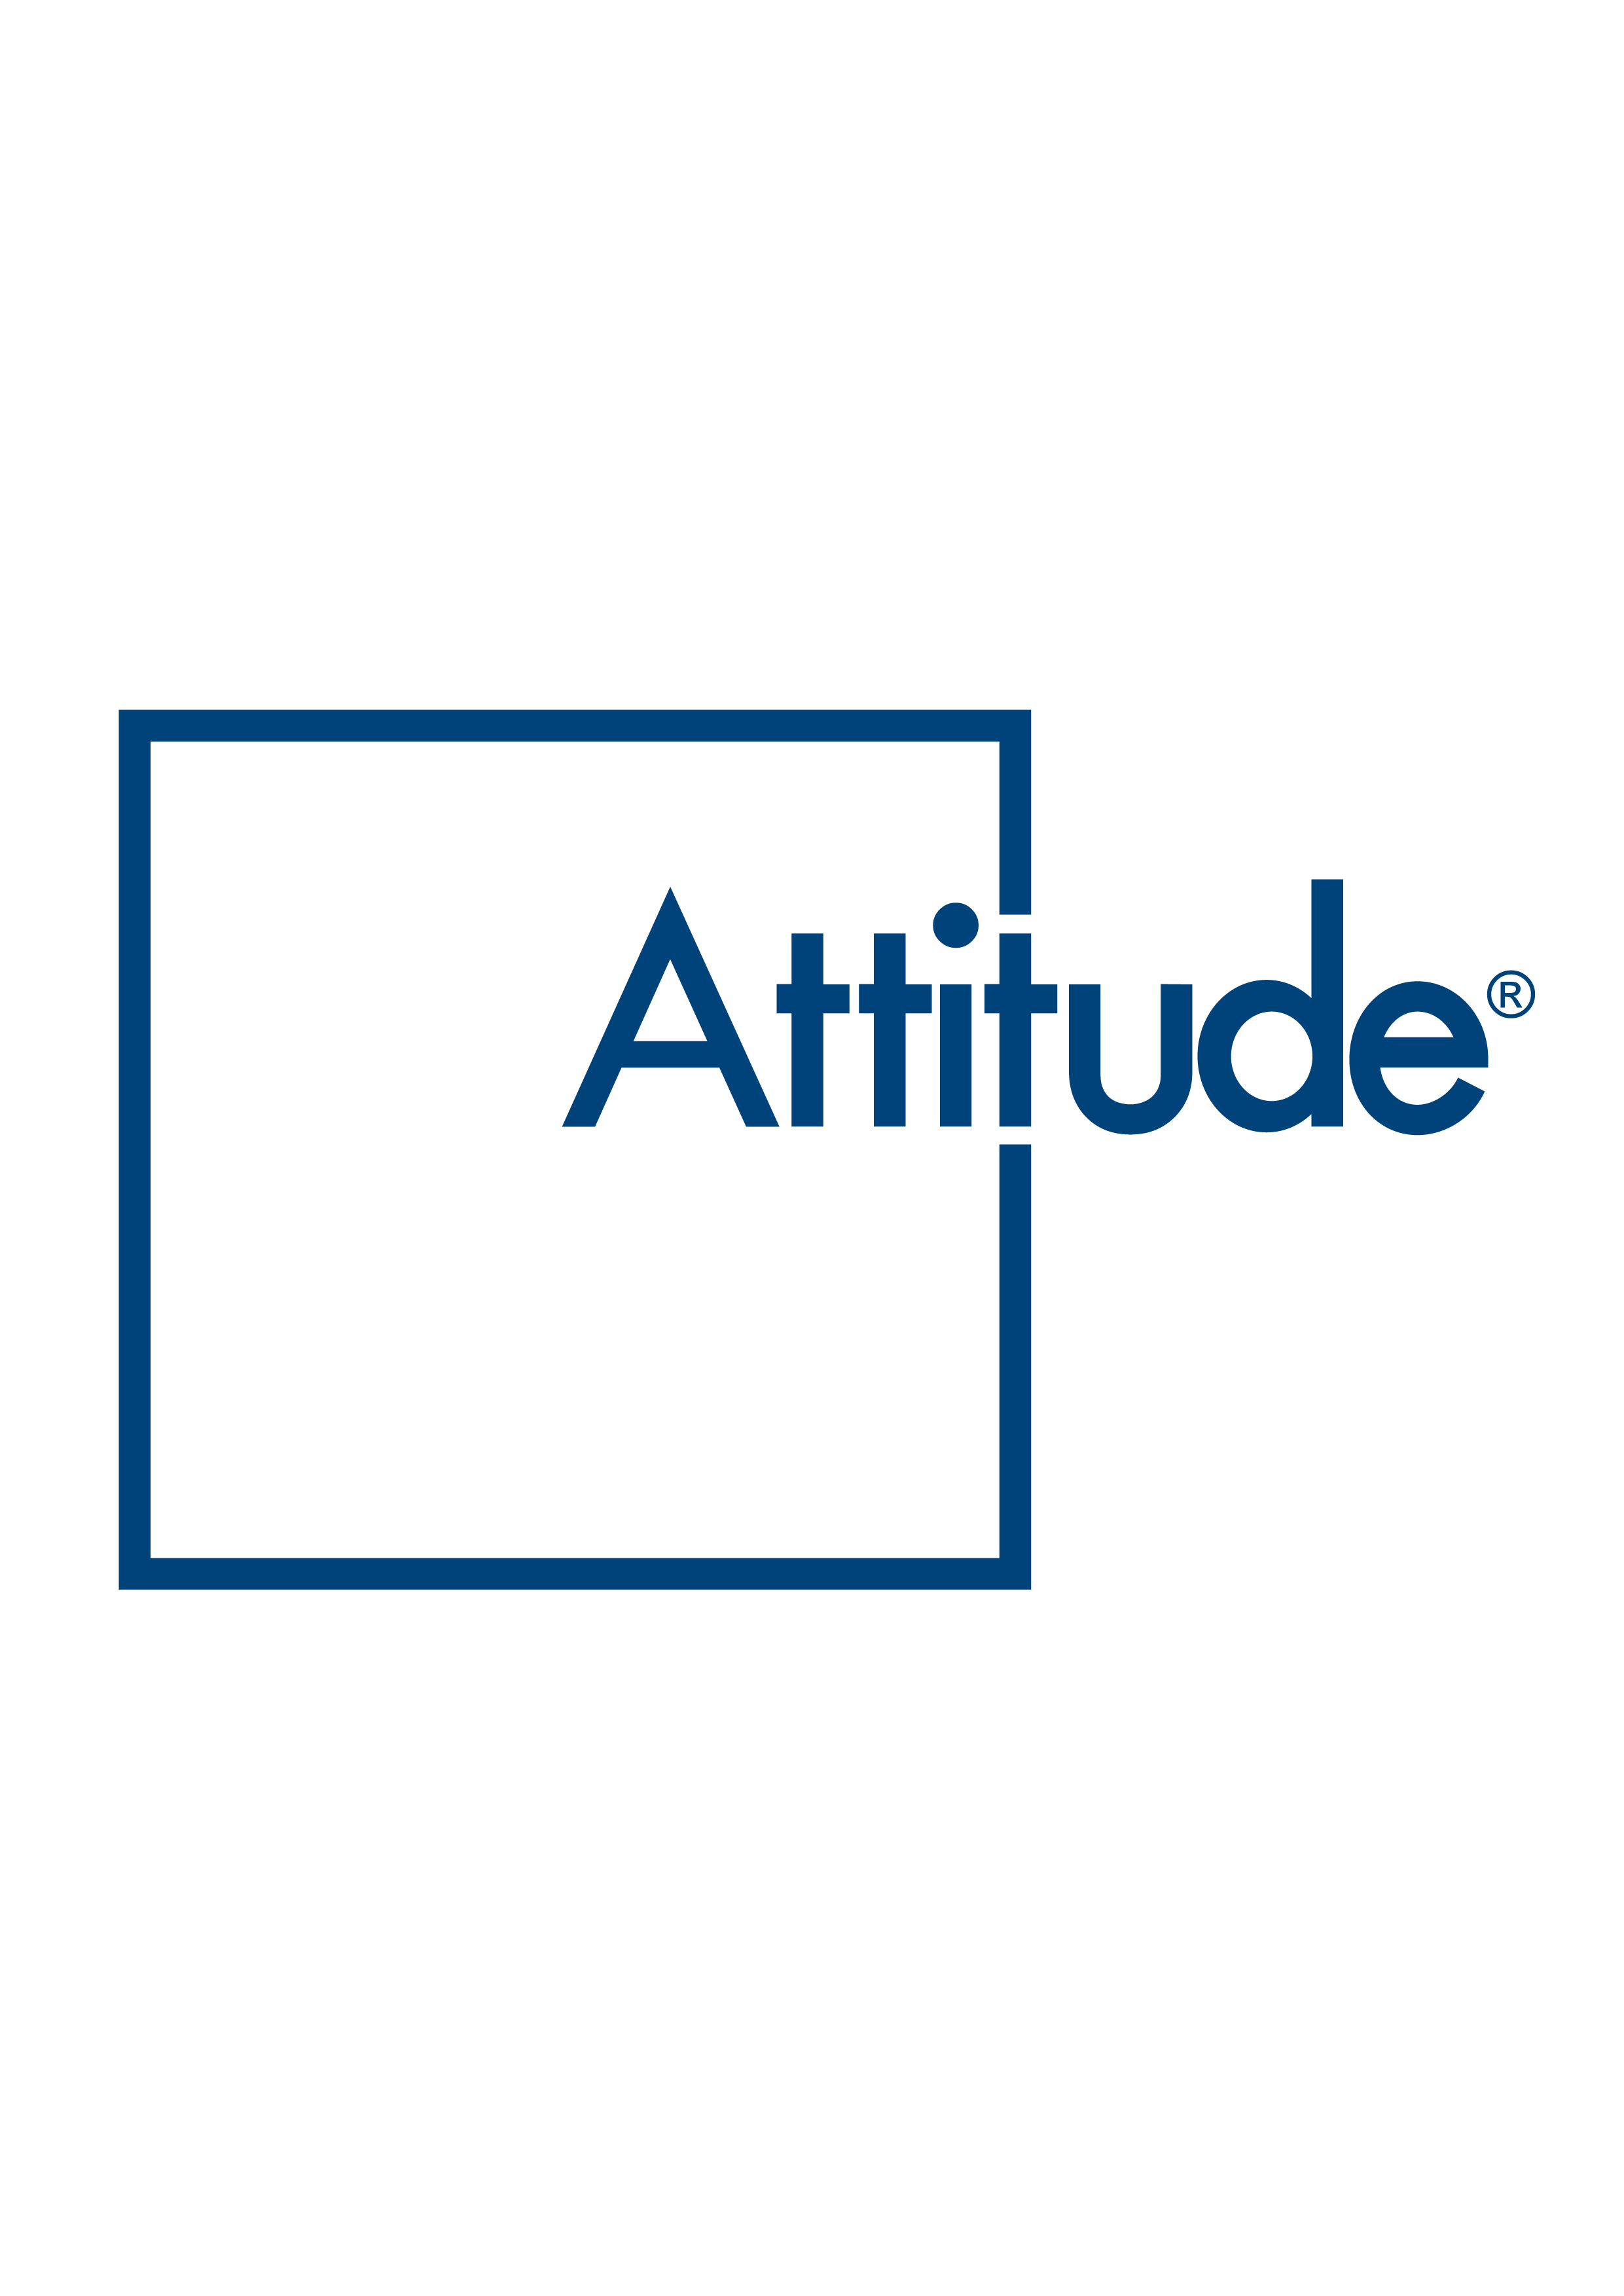 Il futuro delle aziende passa dallo sviluppo commerciale: Attitude Ltd per la gestione dello Strategic Field Marketing 